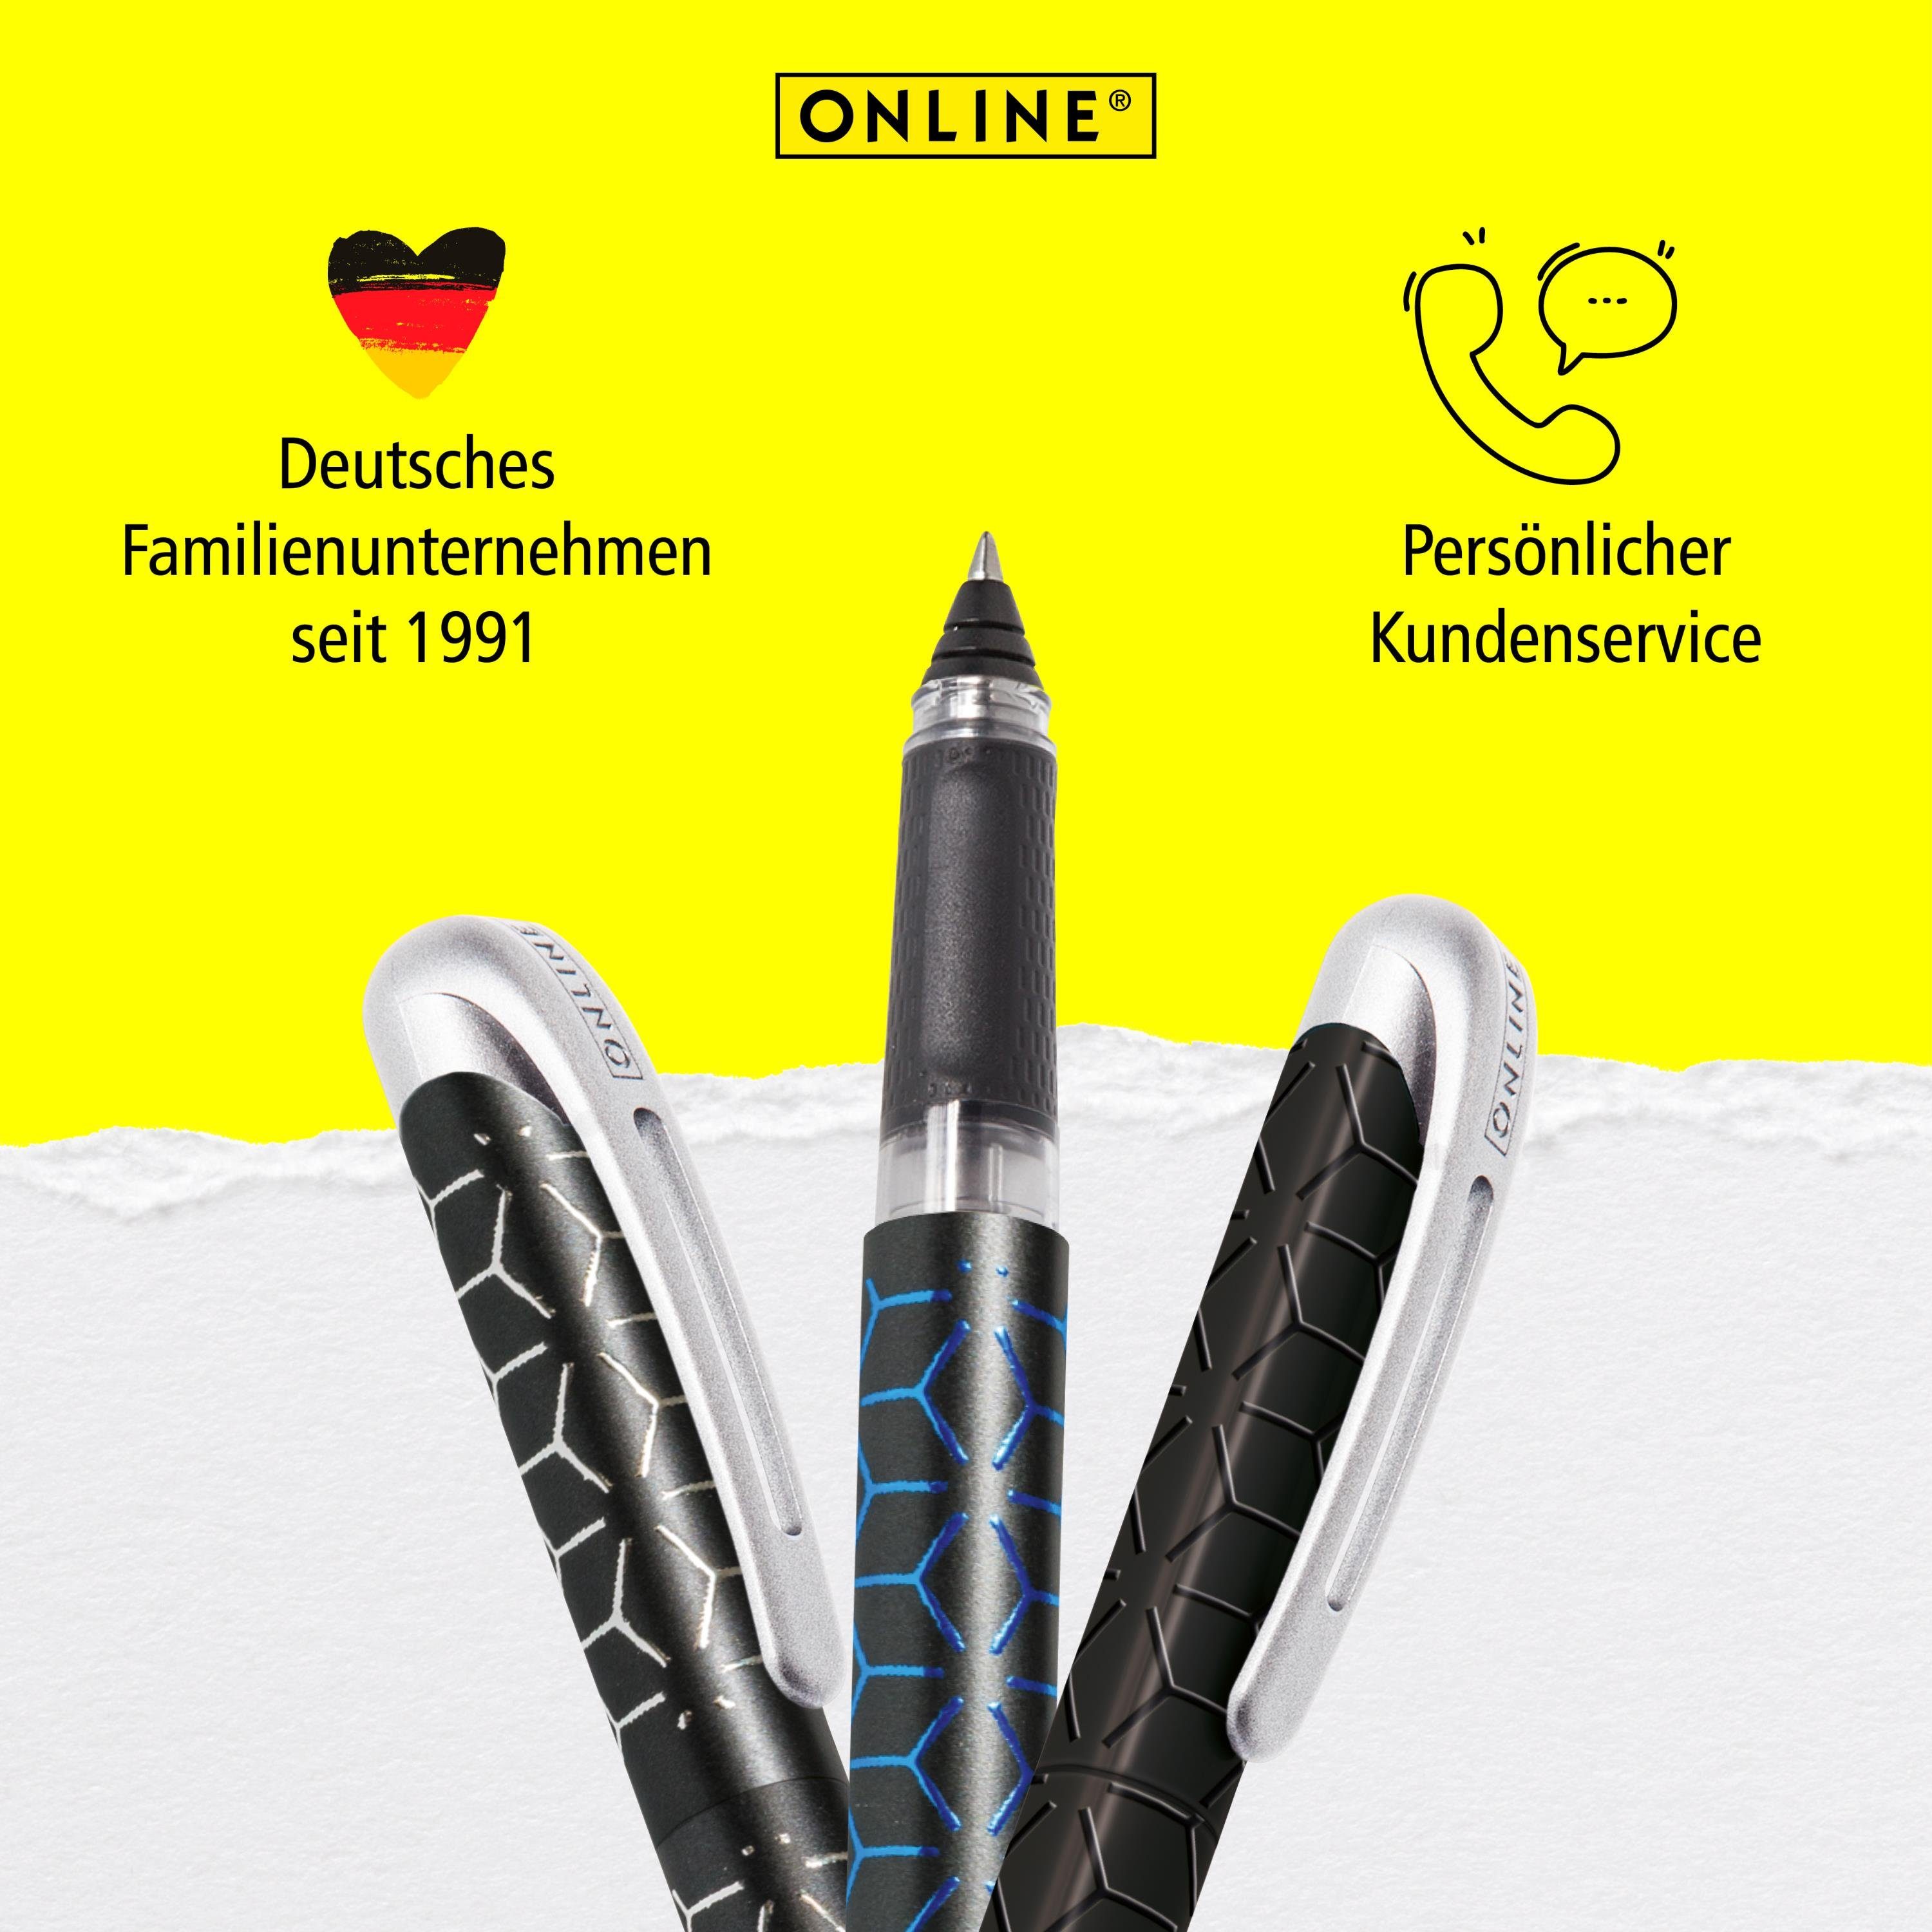 Pen College in hergestellt Online ergonomisch, Schule, Tintenpatronen-Rollerball, Blue für ideal Tintenroller Style die Deutschland